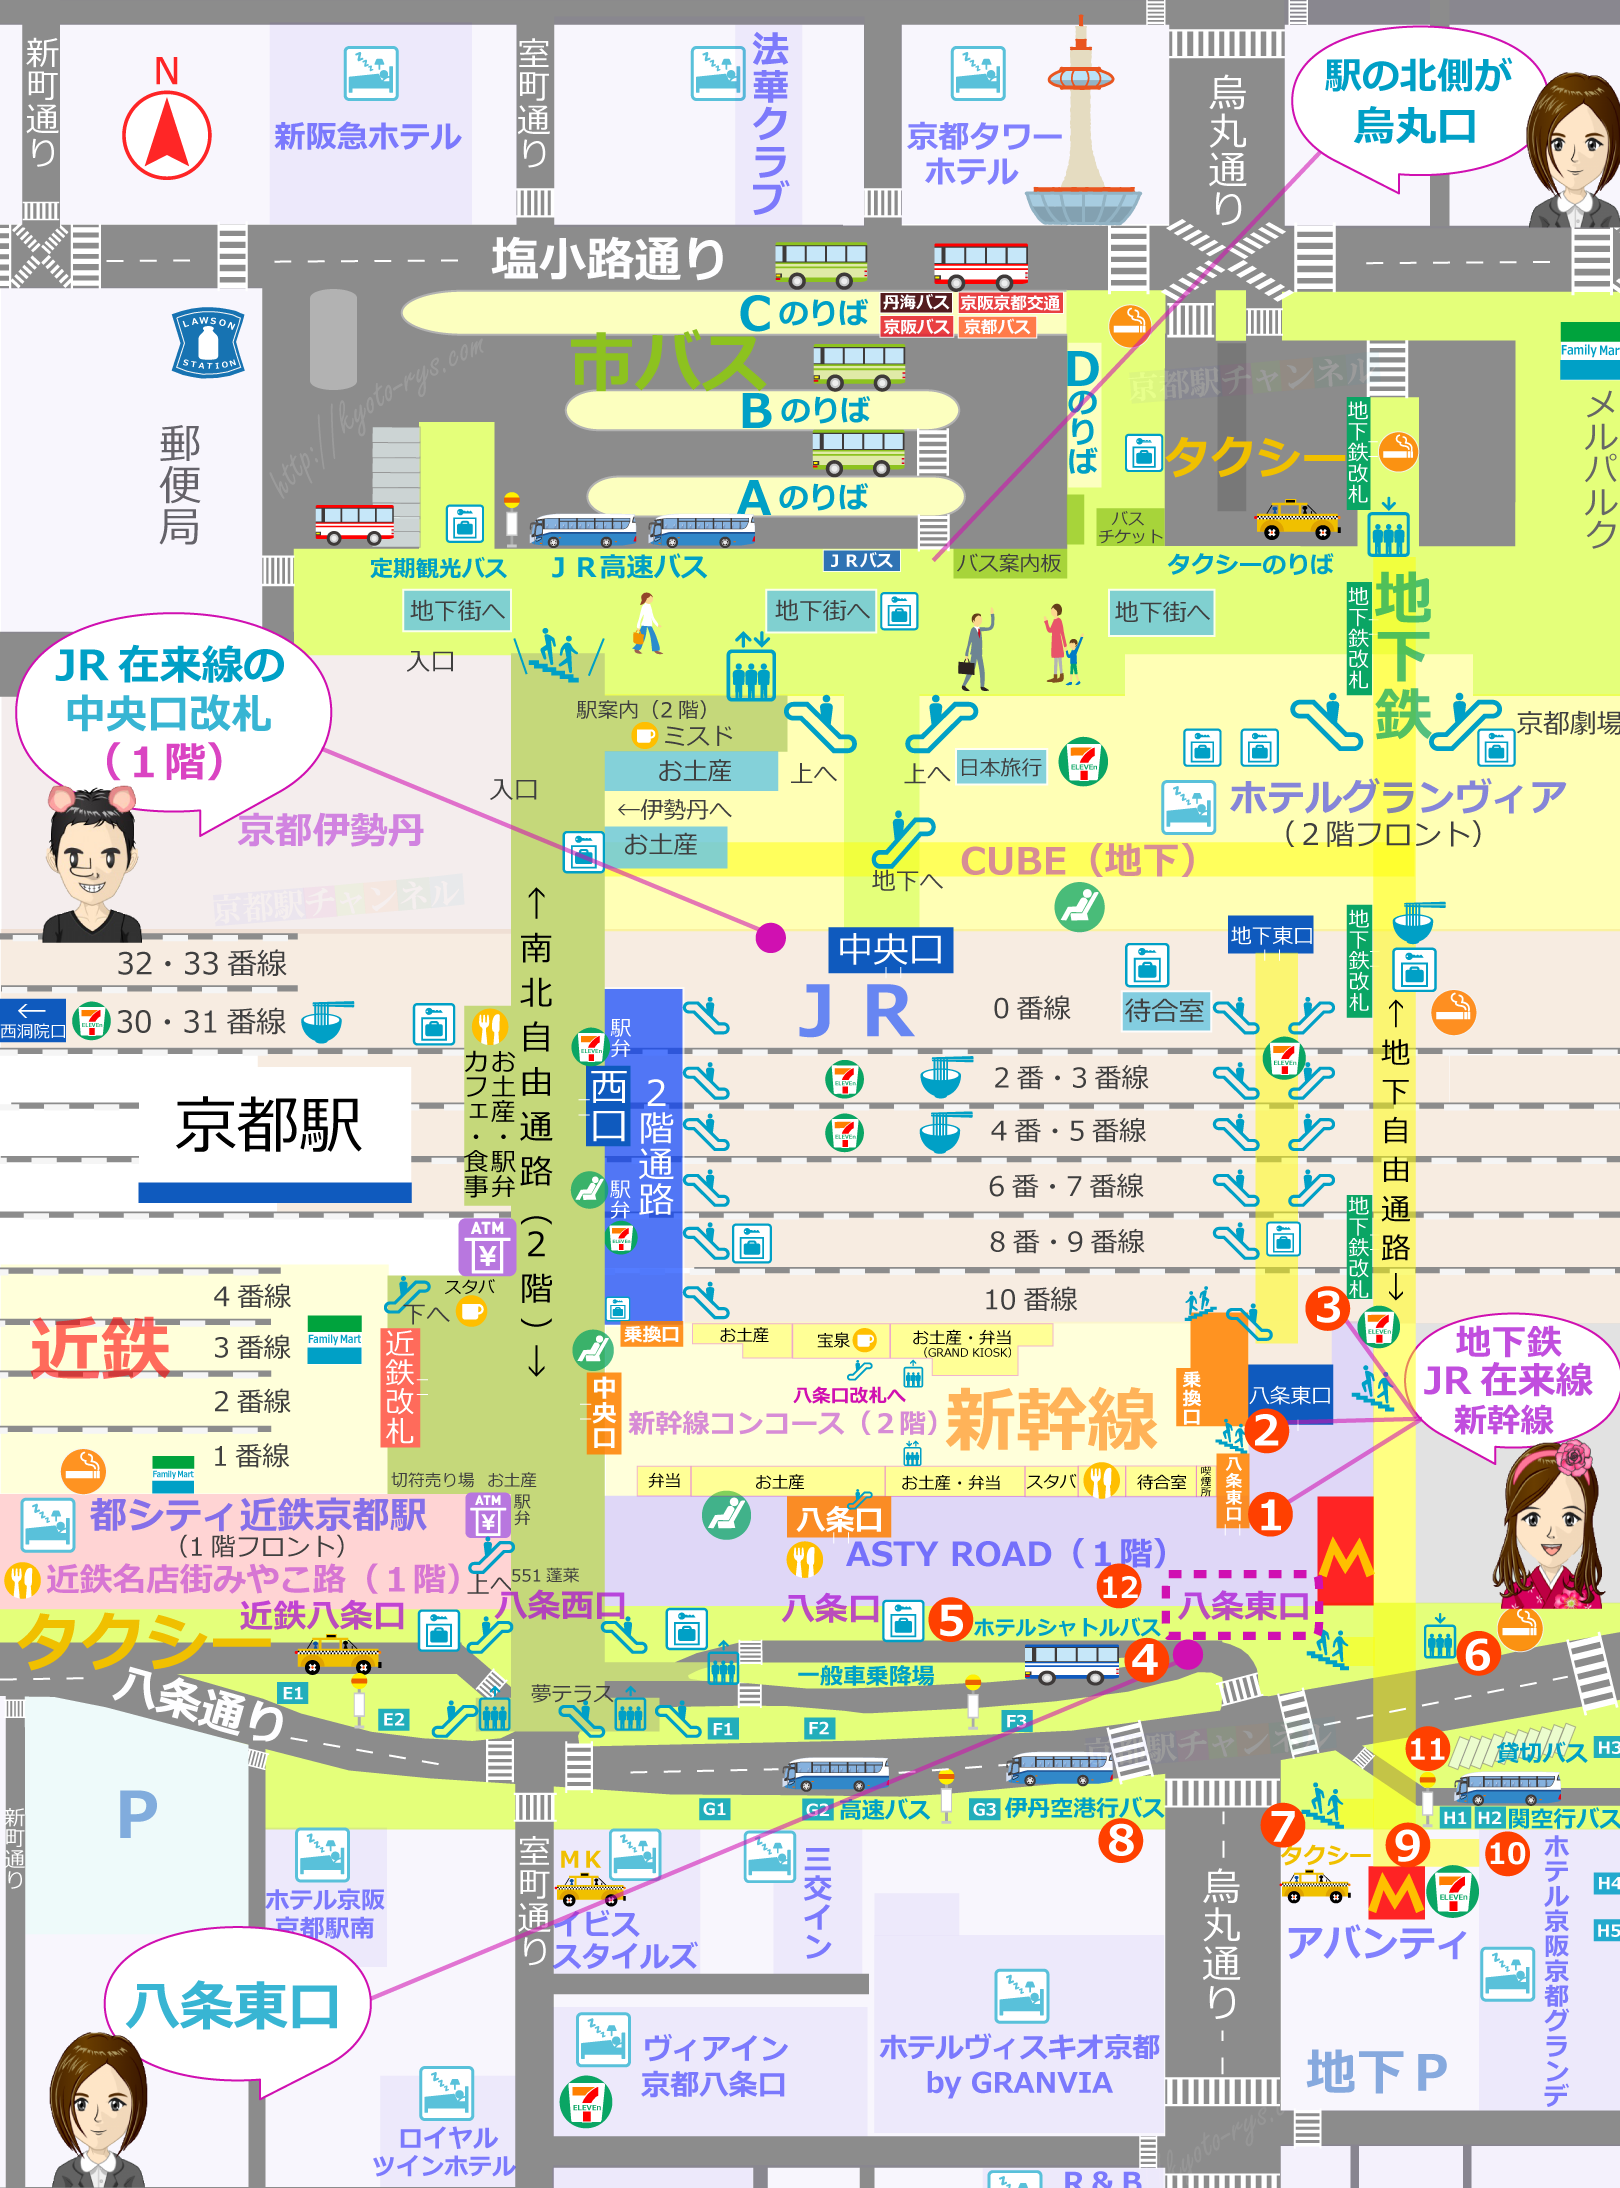 京都駅の構内図と八条東口のマップ